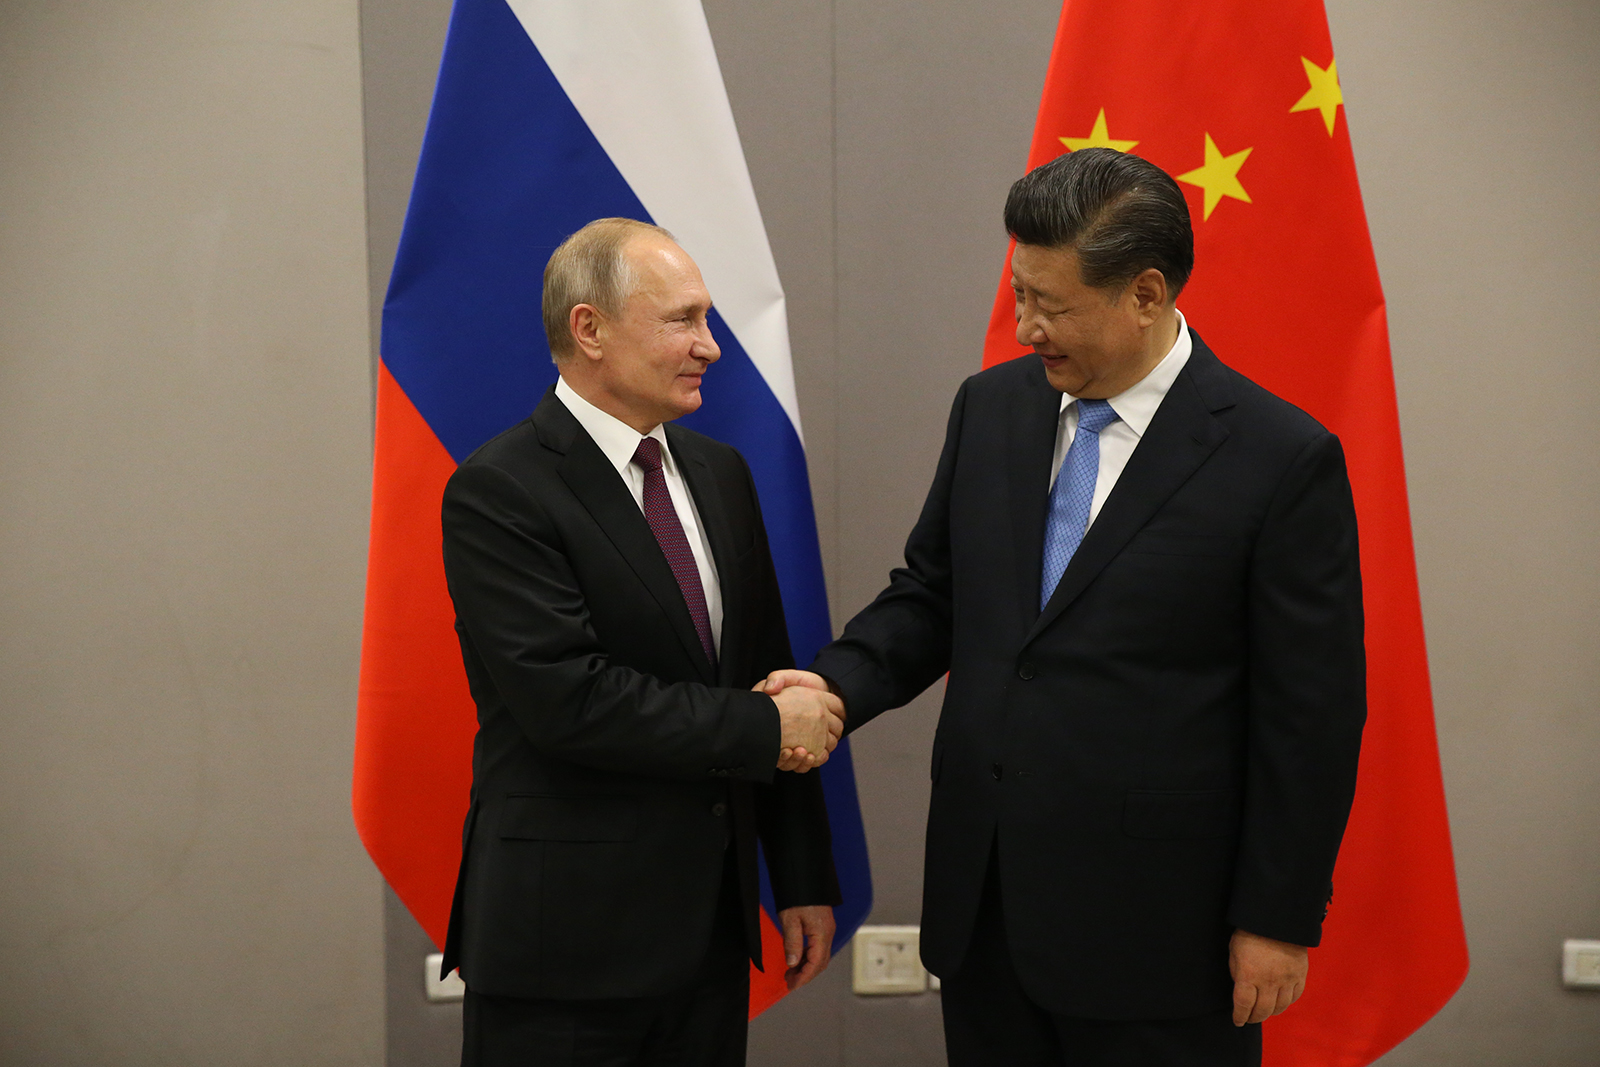 Vladimir Putin greets Chinese leader Xi Jinping during their bilateral meeting in Brasilia, Brazil on November 13, 2019.